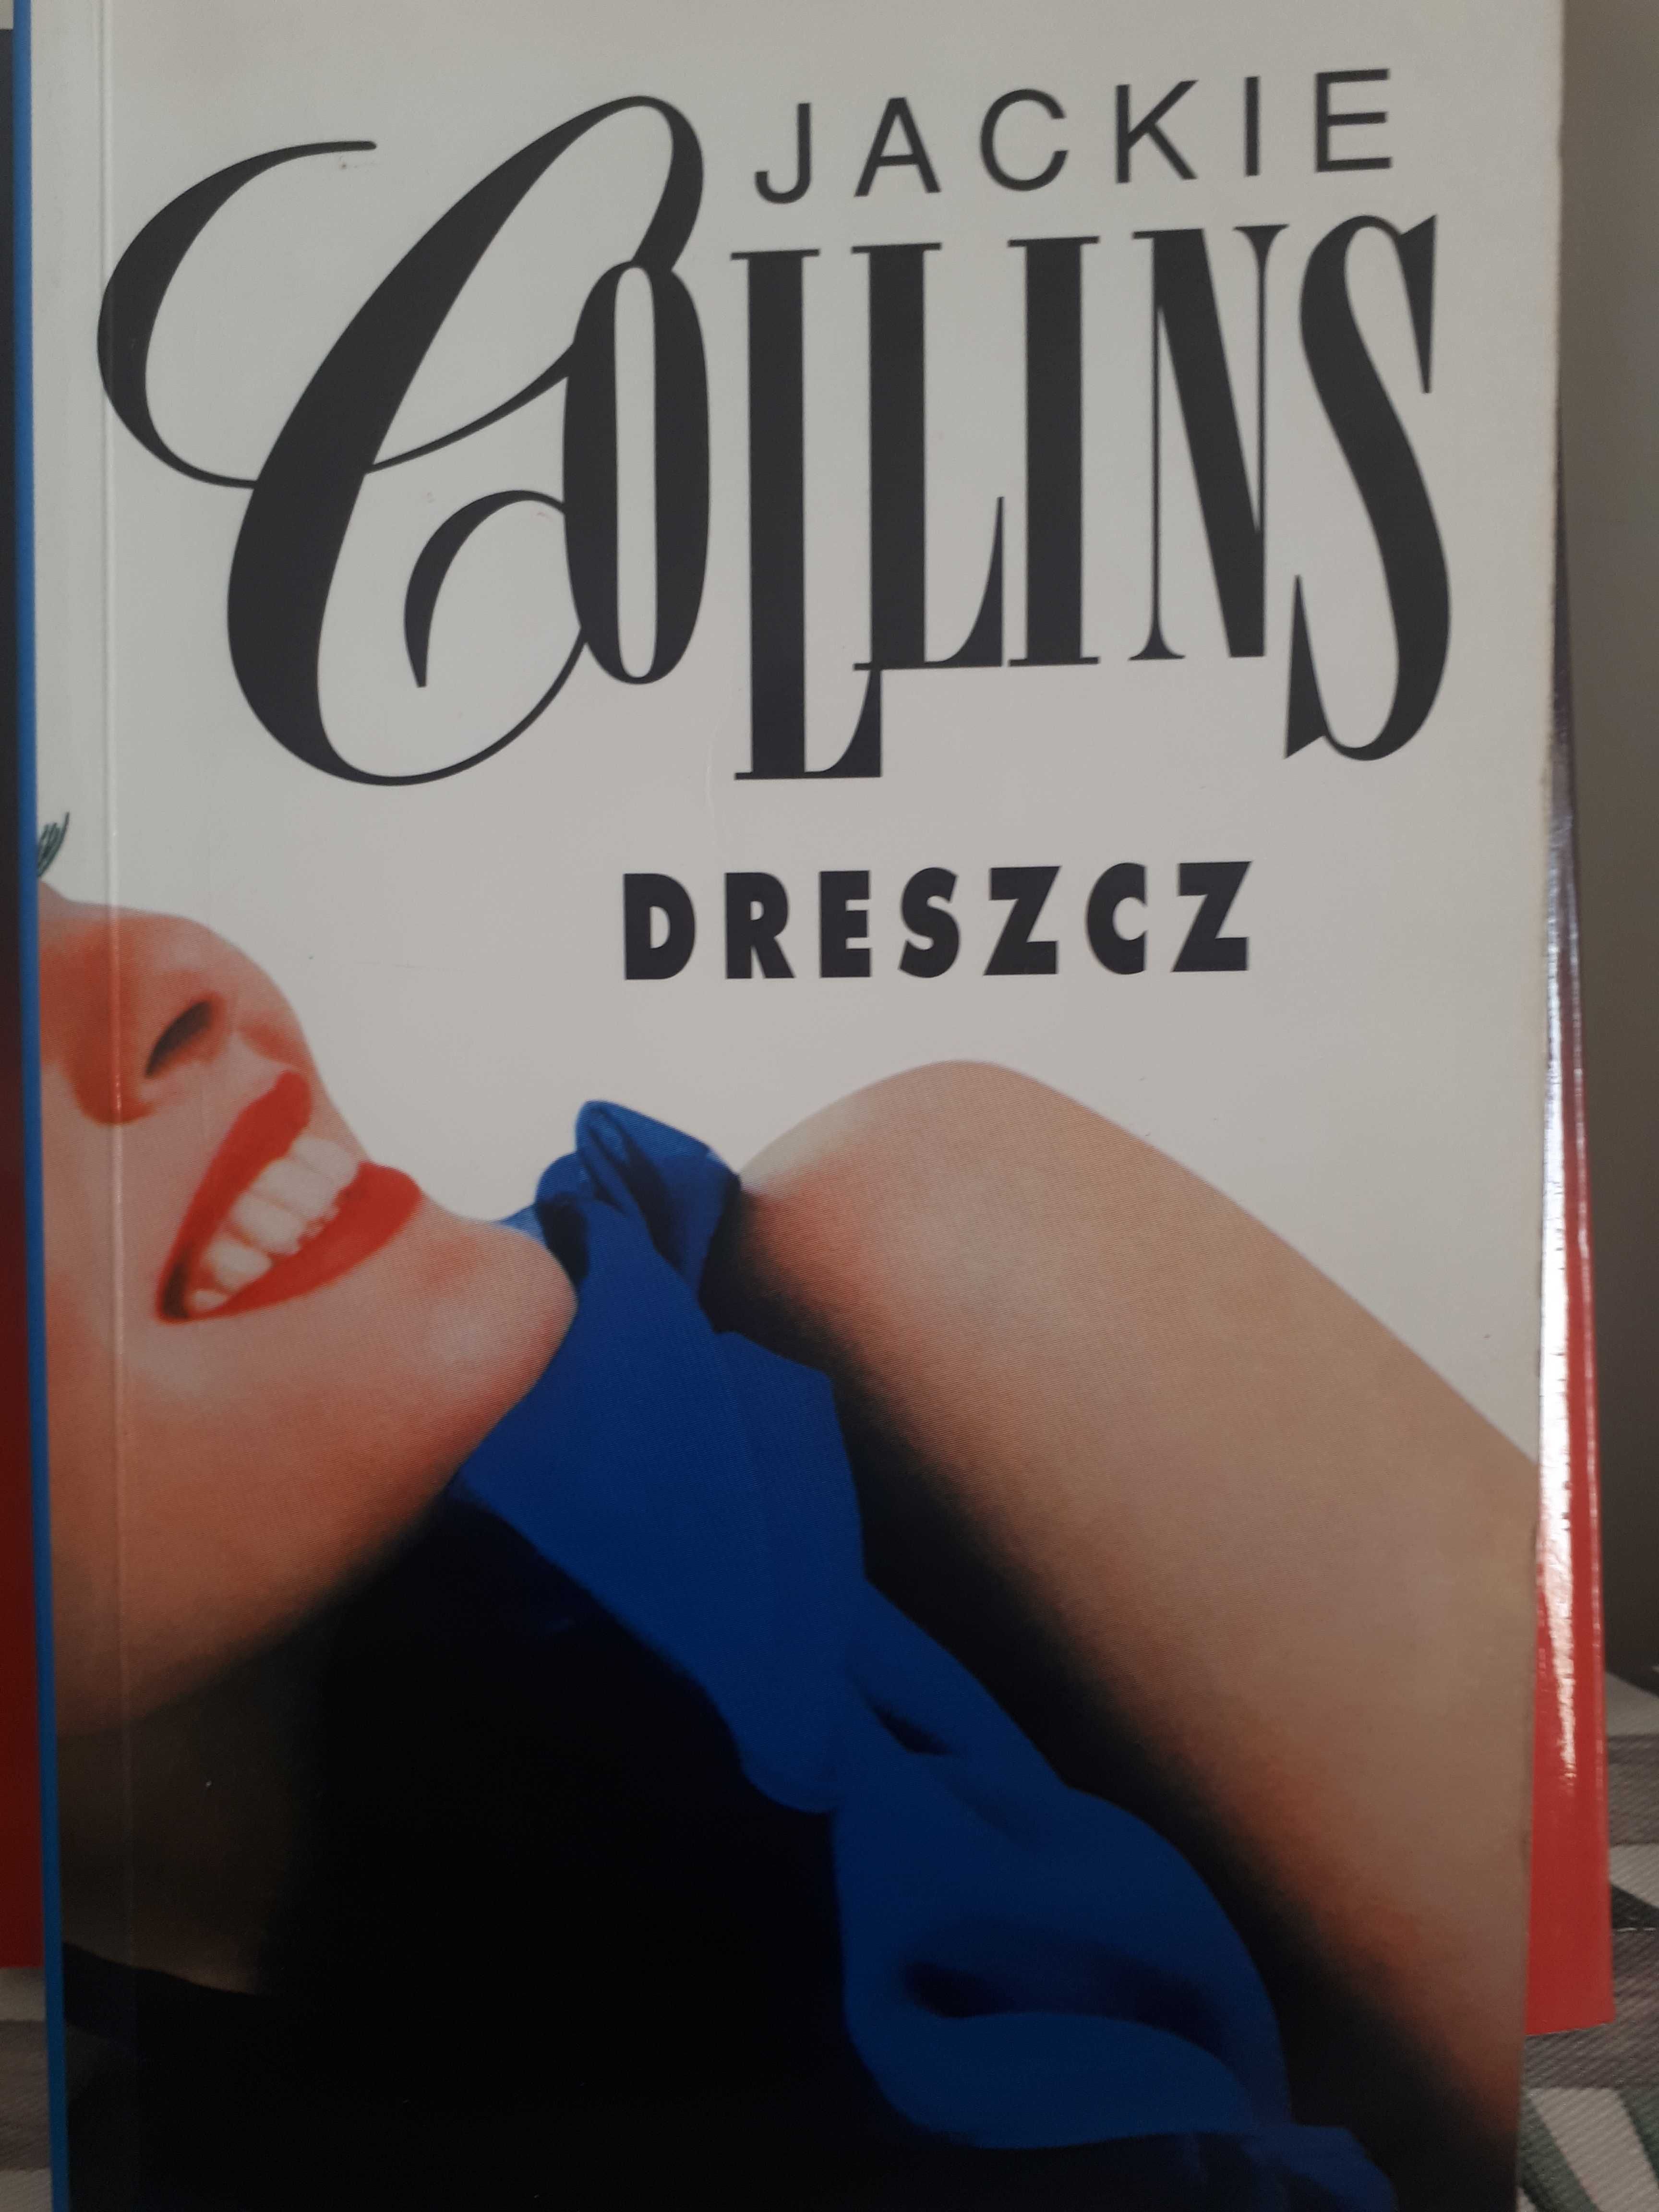 Książki Jackie Collins - 3 powieści